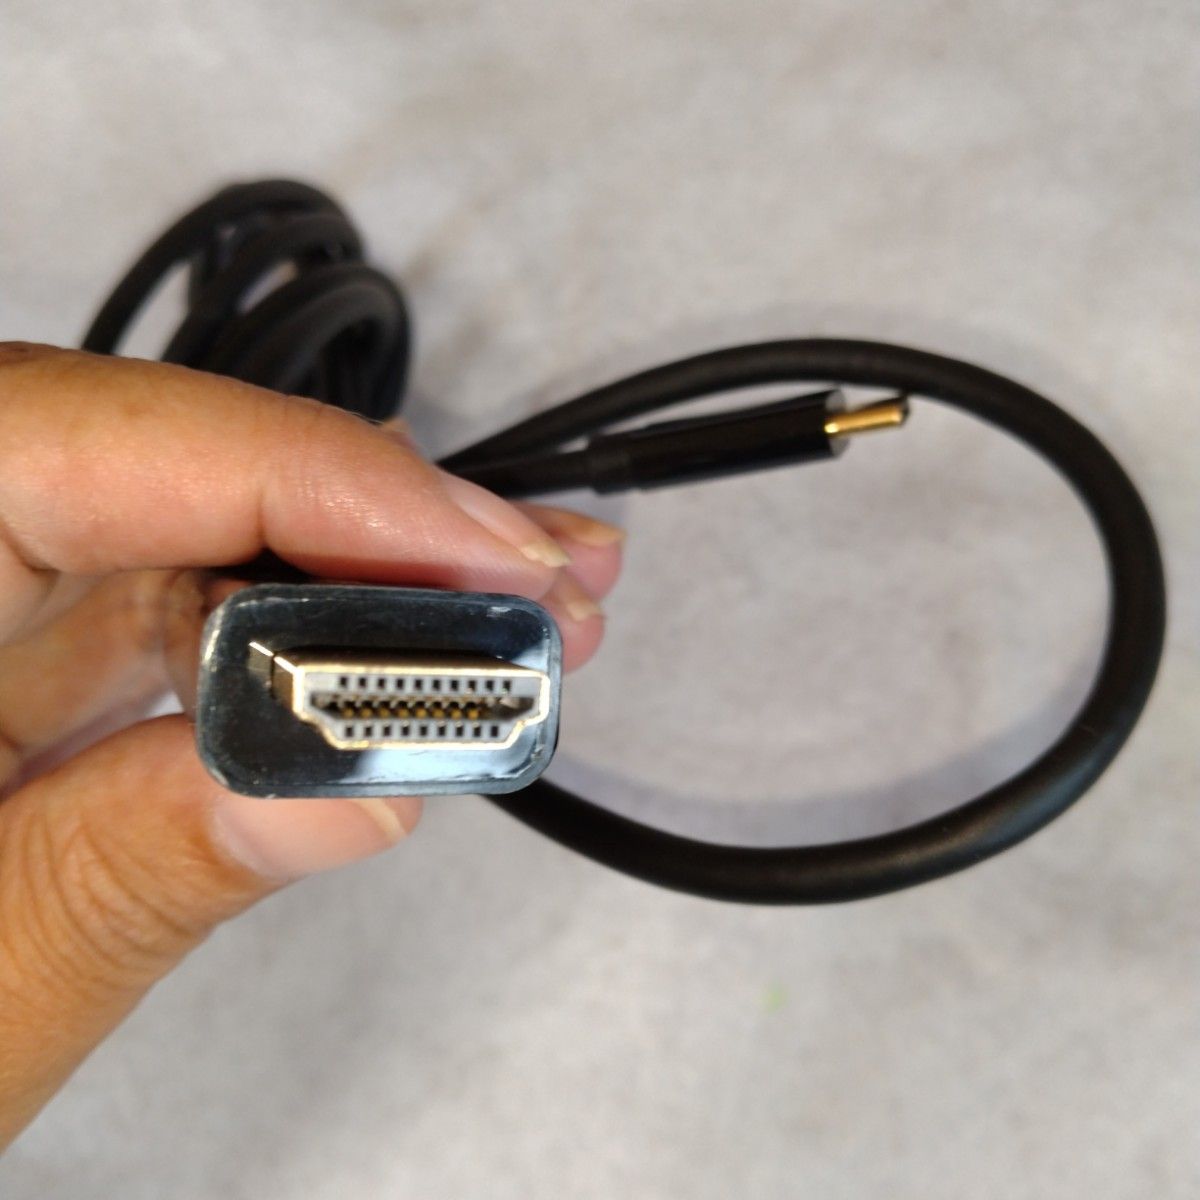 HDIMキャプチャーボード/HDMI to USB Type-C